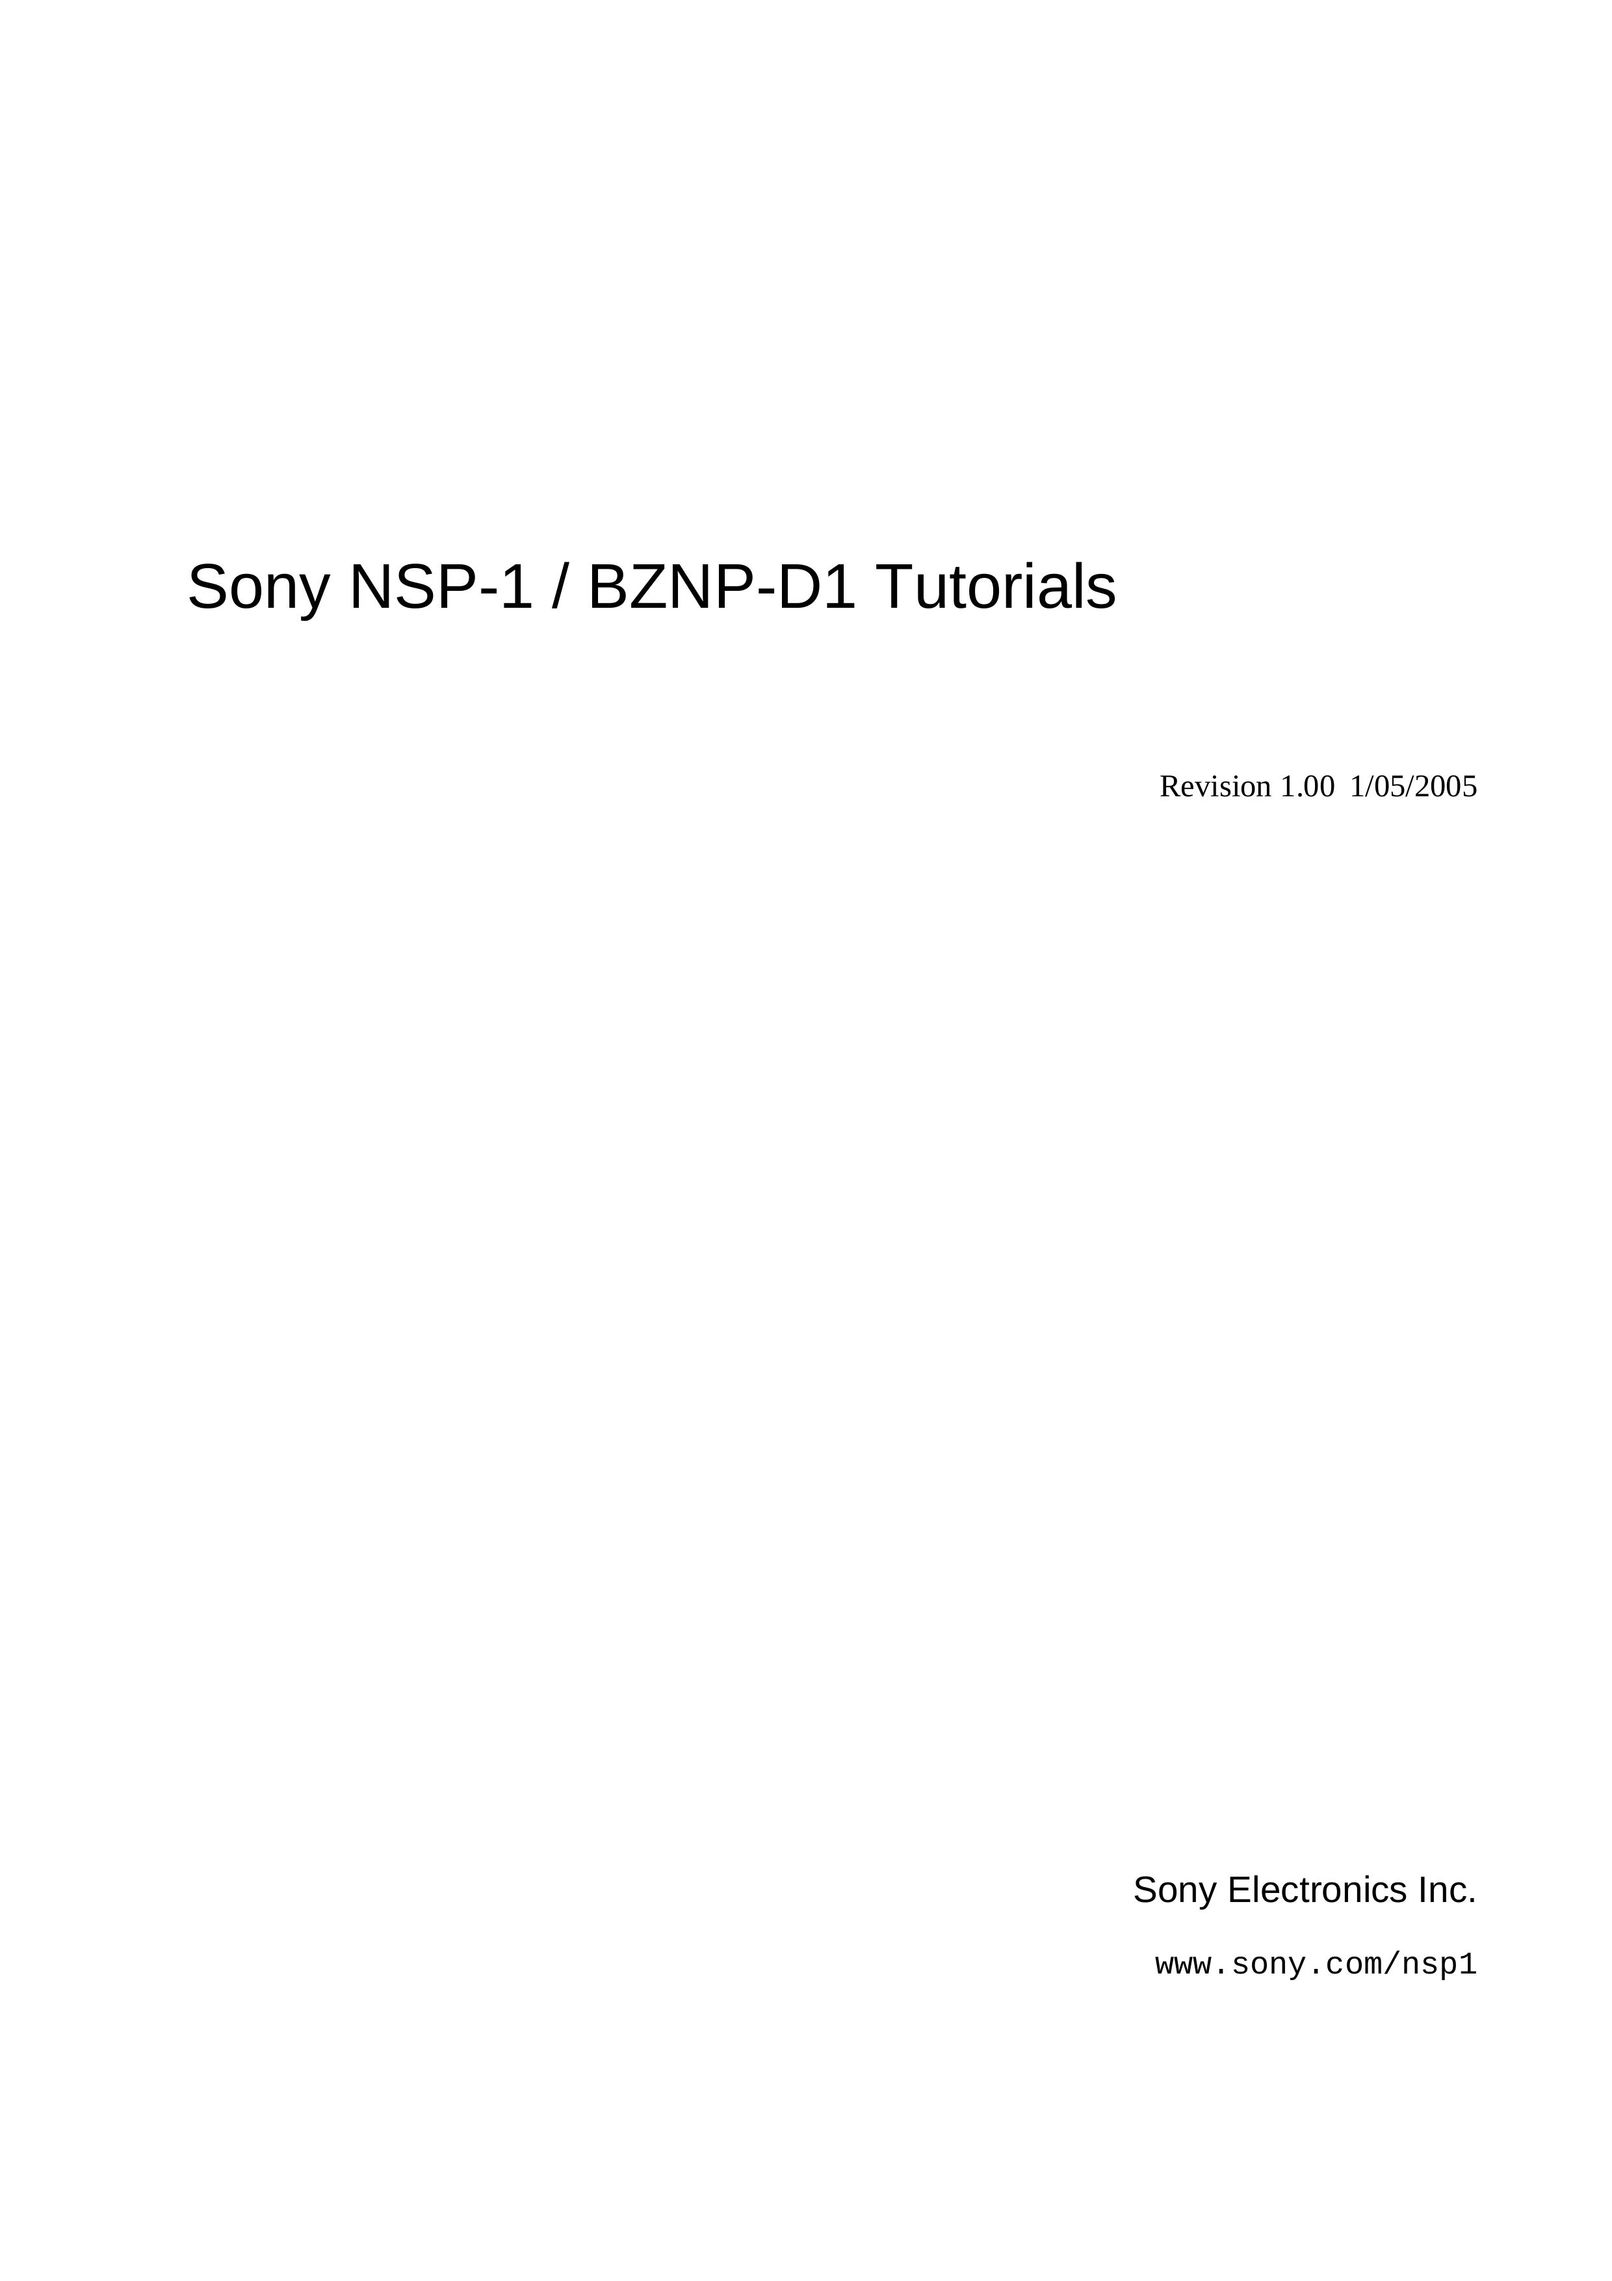 Sony BZNP-D1 Stereo System User Manual